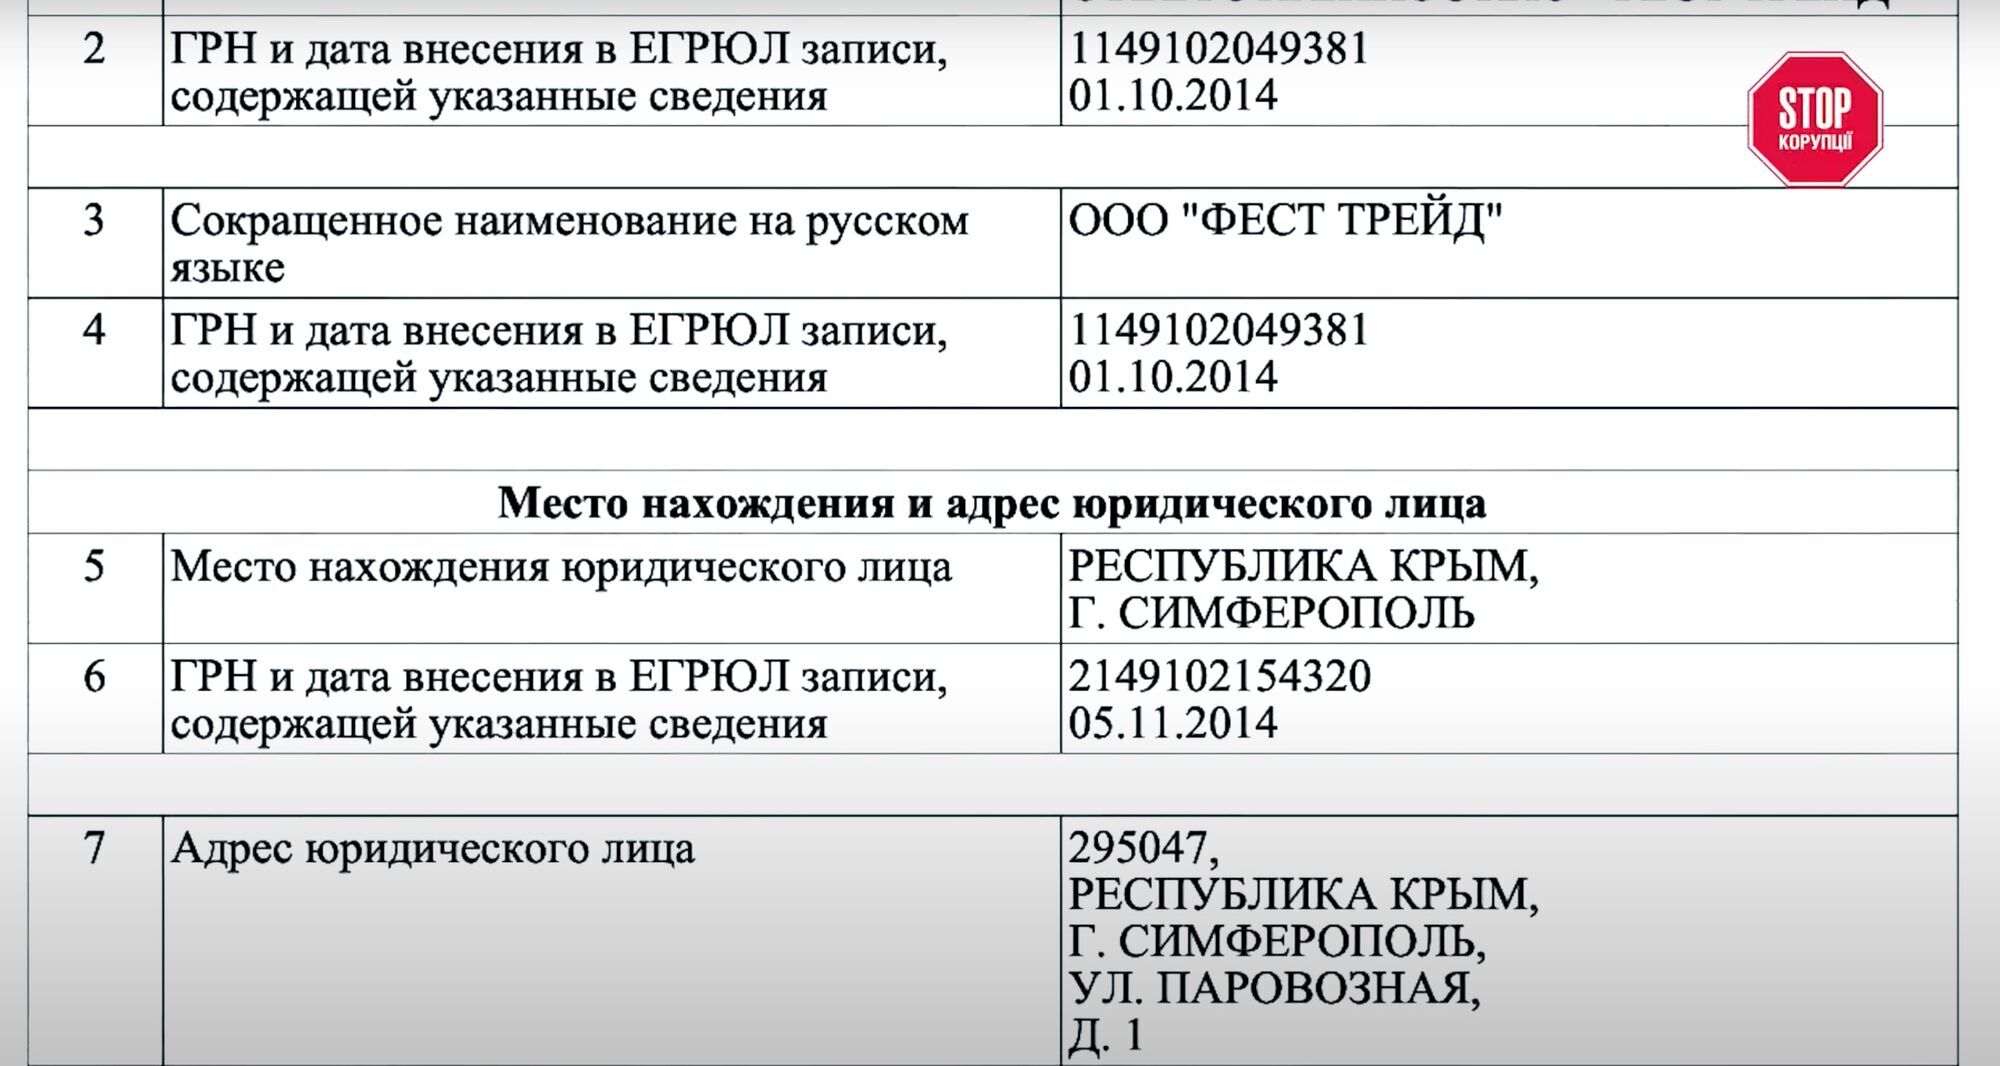 Компания была зарегистрирована уже в аннексированном Крыму